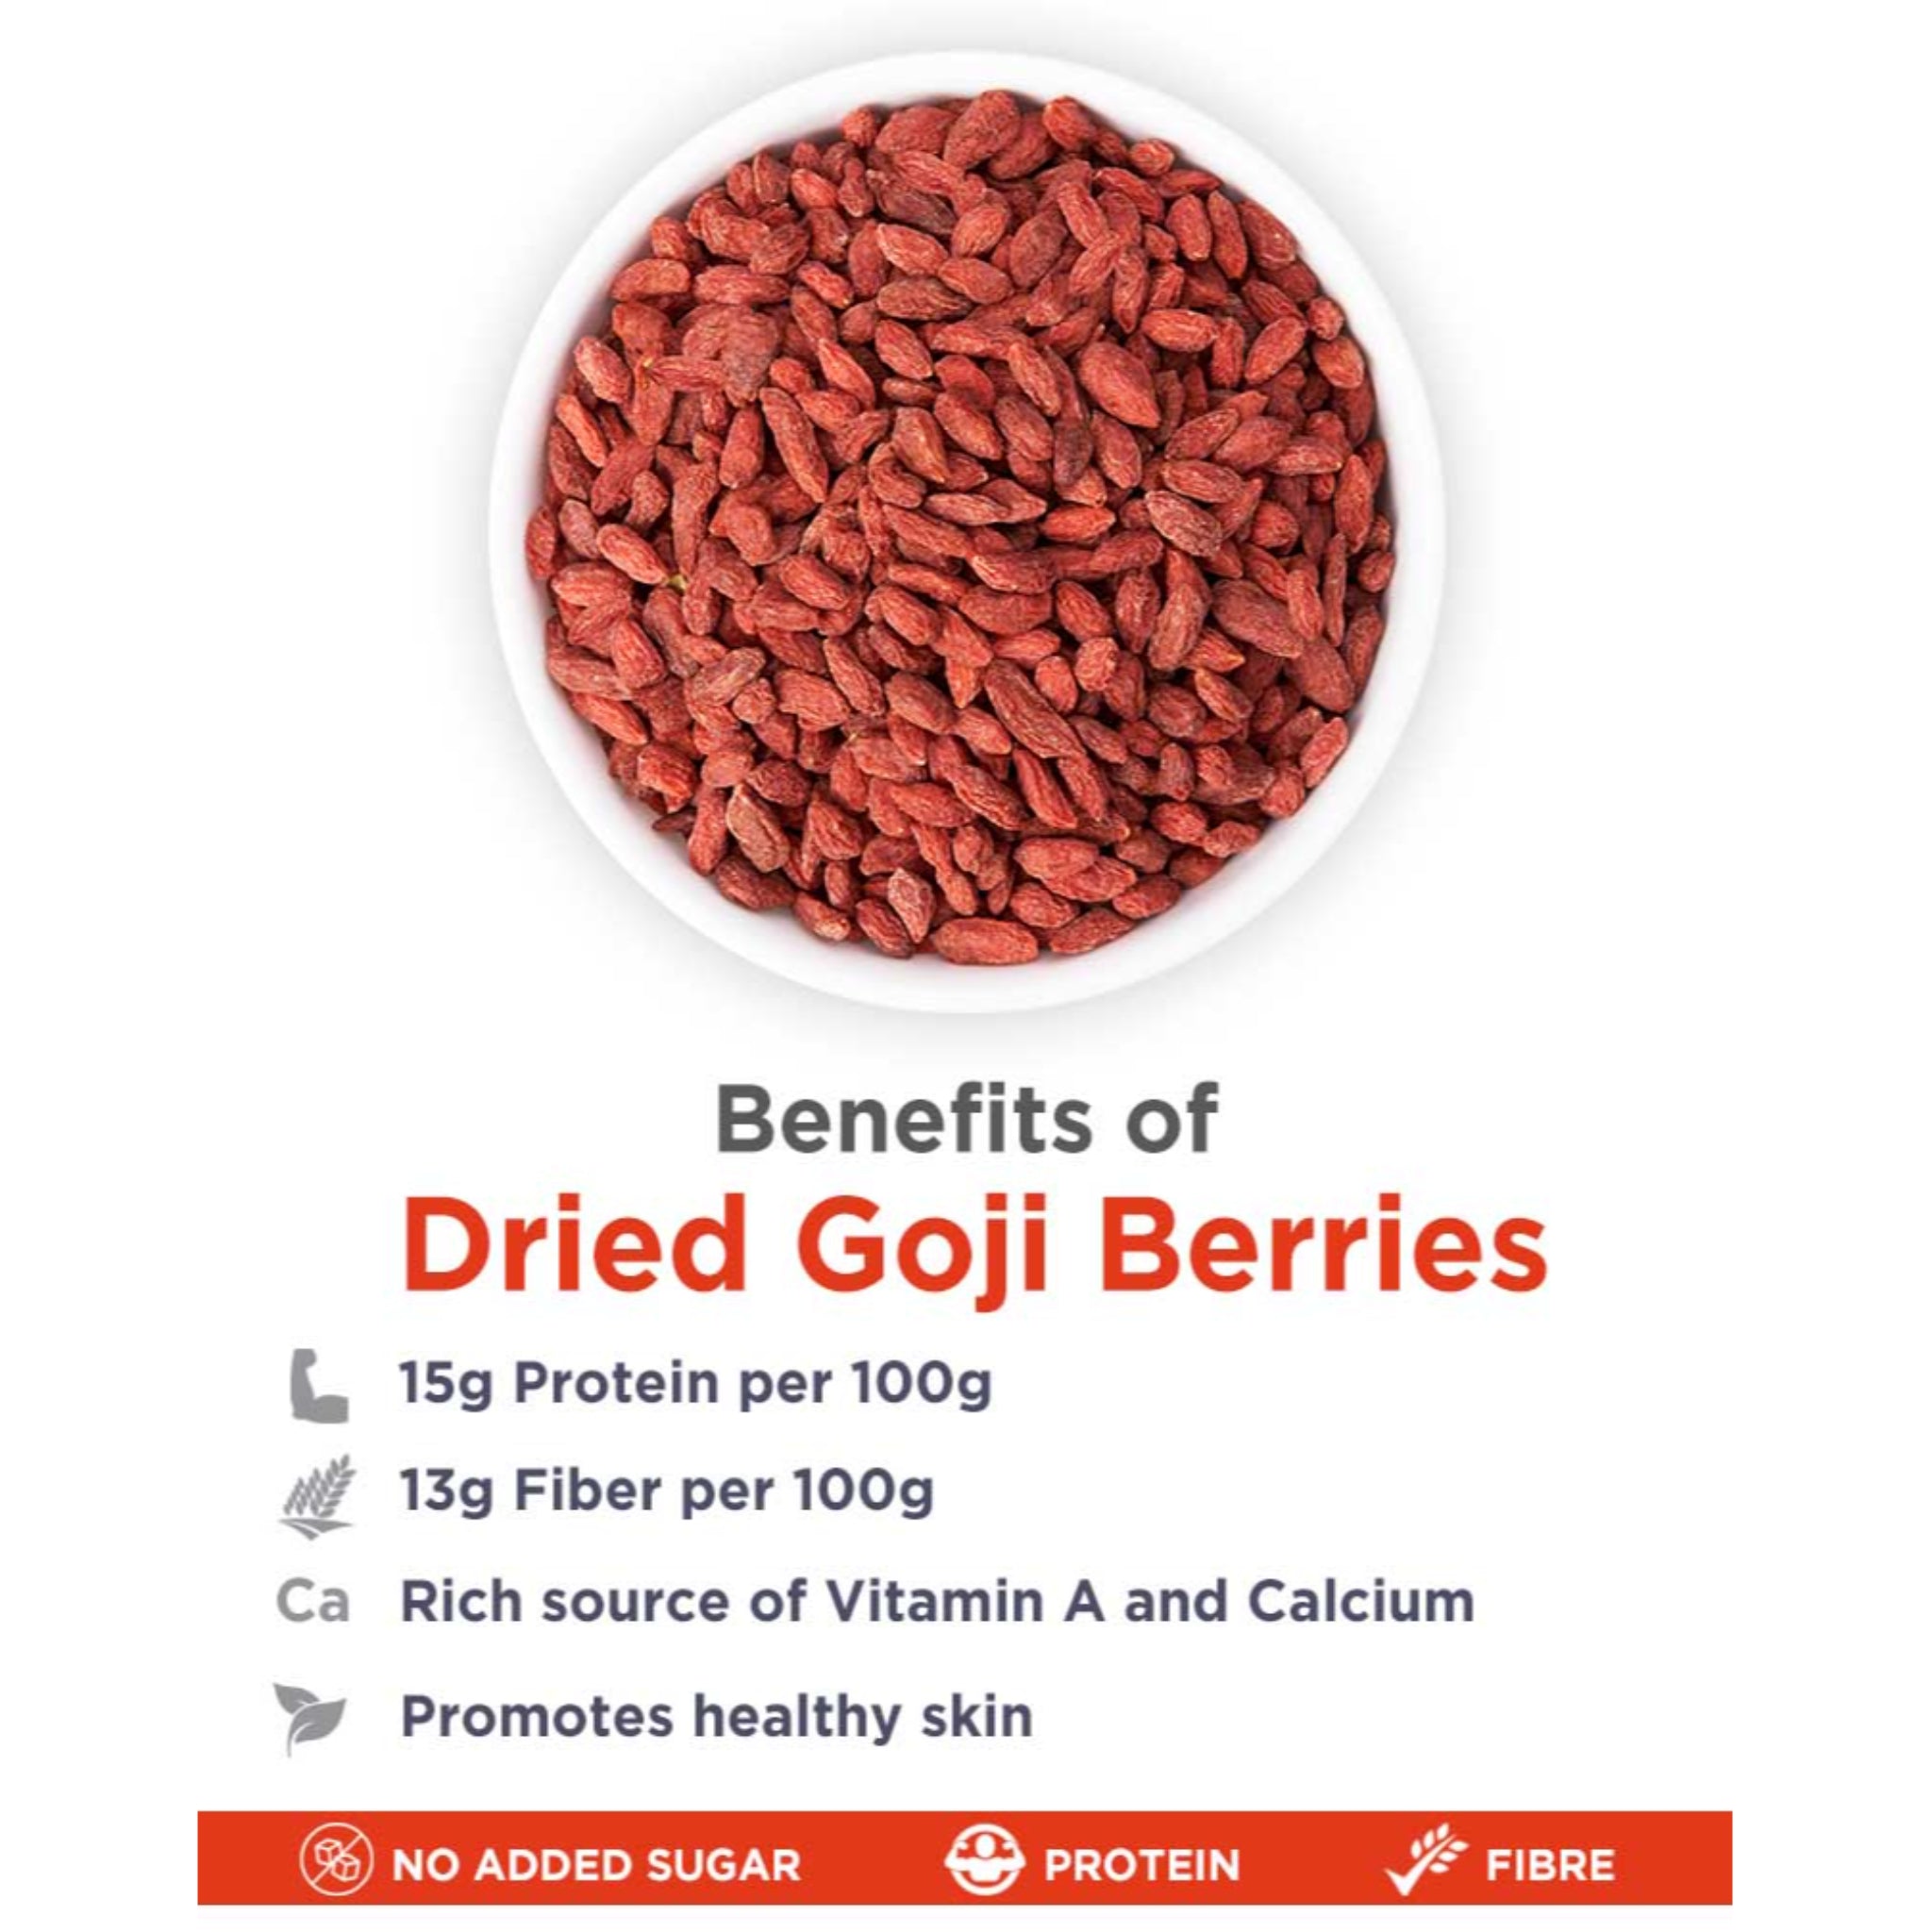 True Elements Dried Goji Berries